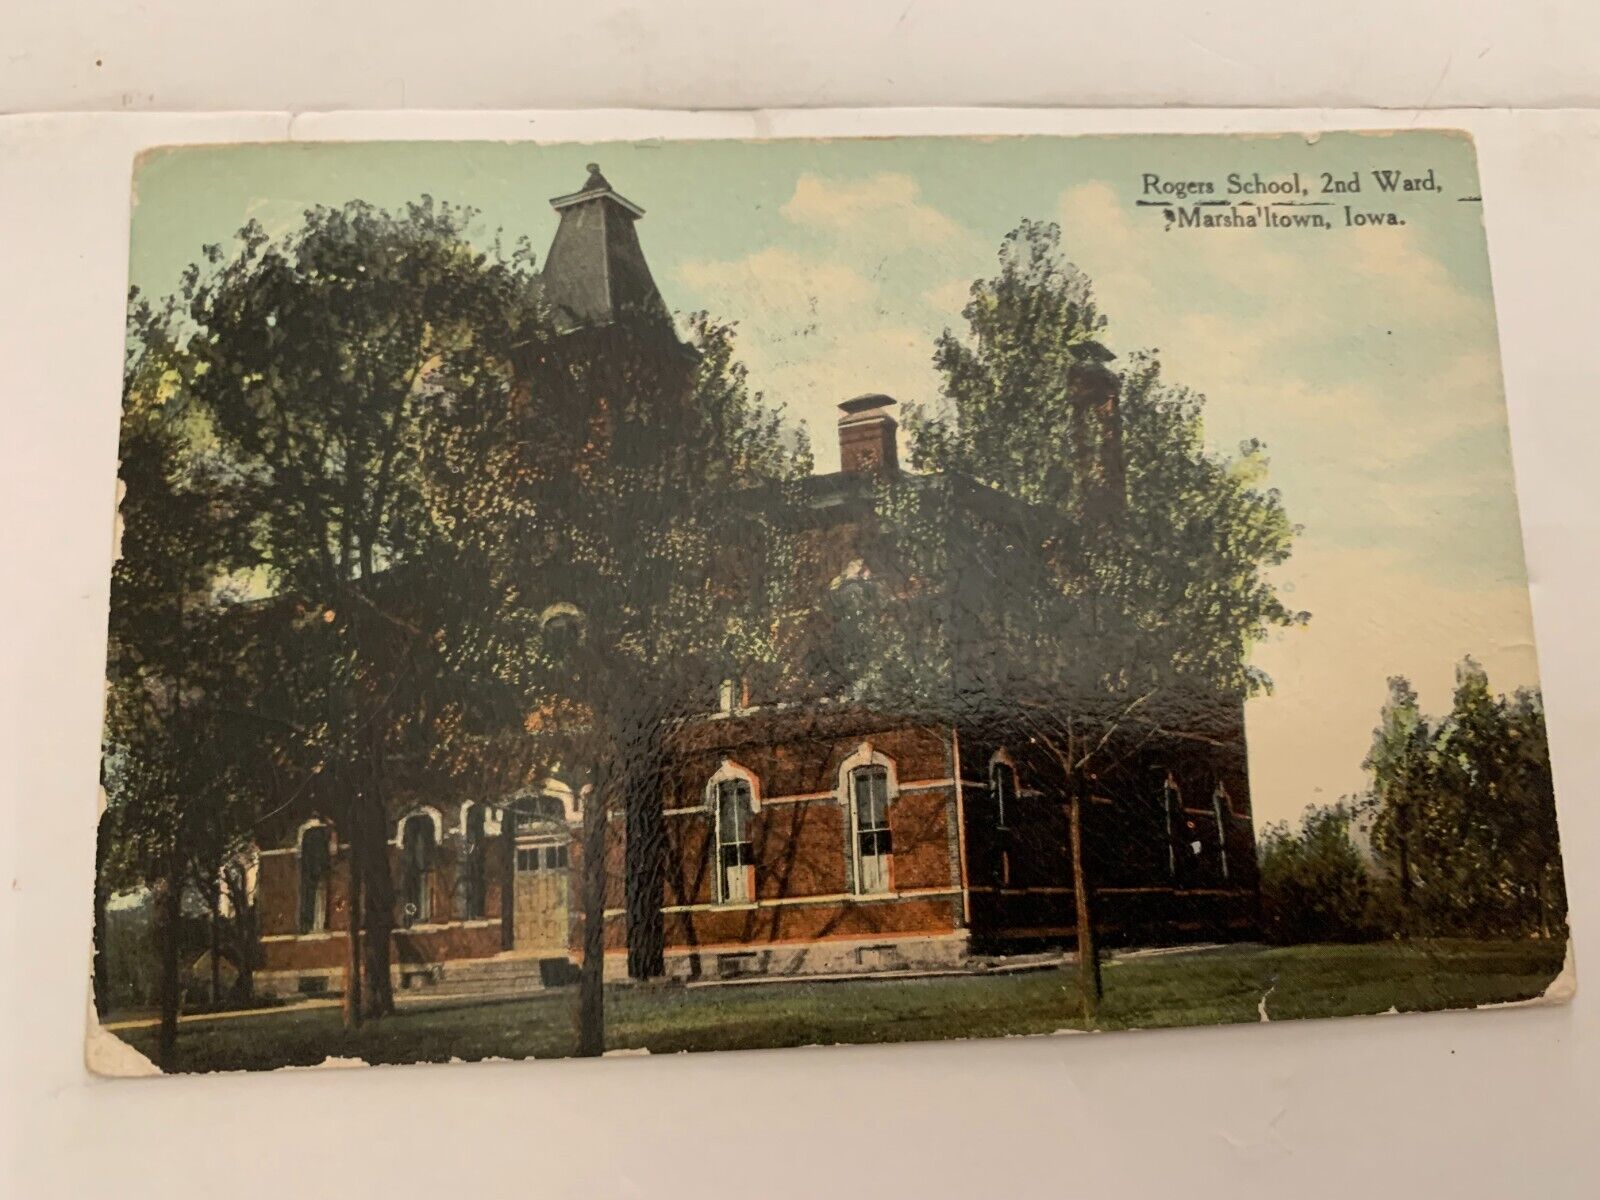 1913 Rogers School 2nd Ward Marshalltown Iowa Postcard